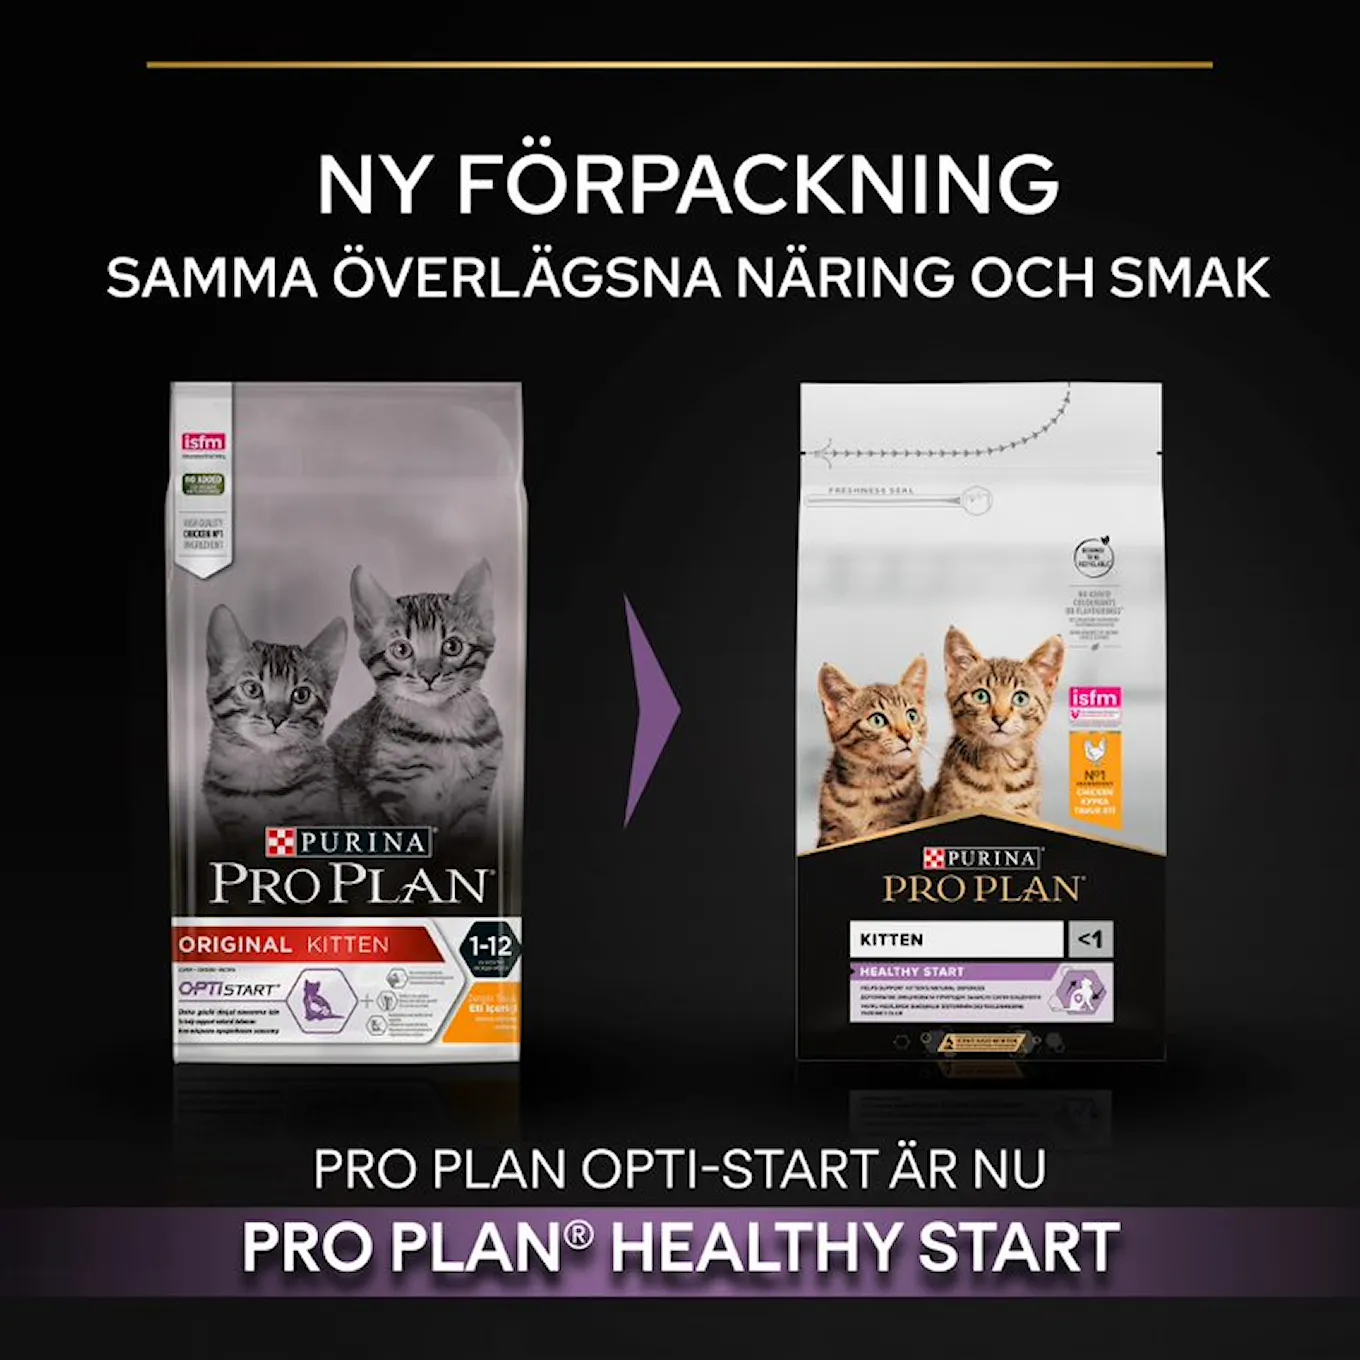 3. Pro Plan Cat Healthy Start New Pack SE.jfif